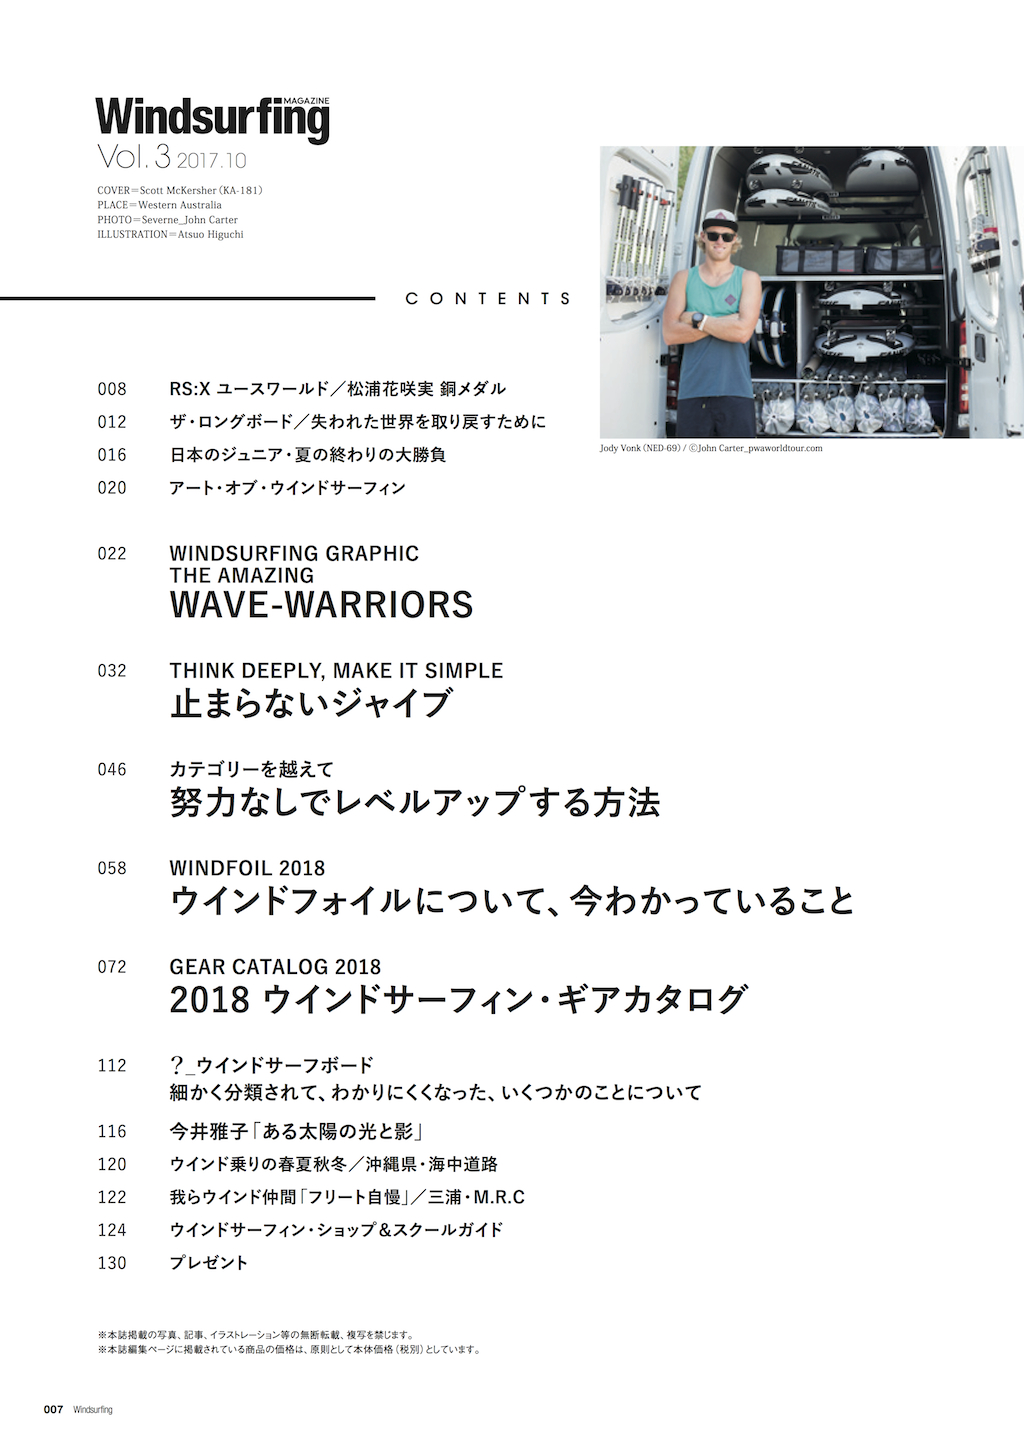 ｜コンテンツ｜ 10ページ以上の特集４本＋2018年ウインドサーフィン・ギアカタログ 